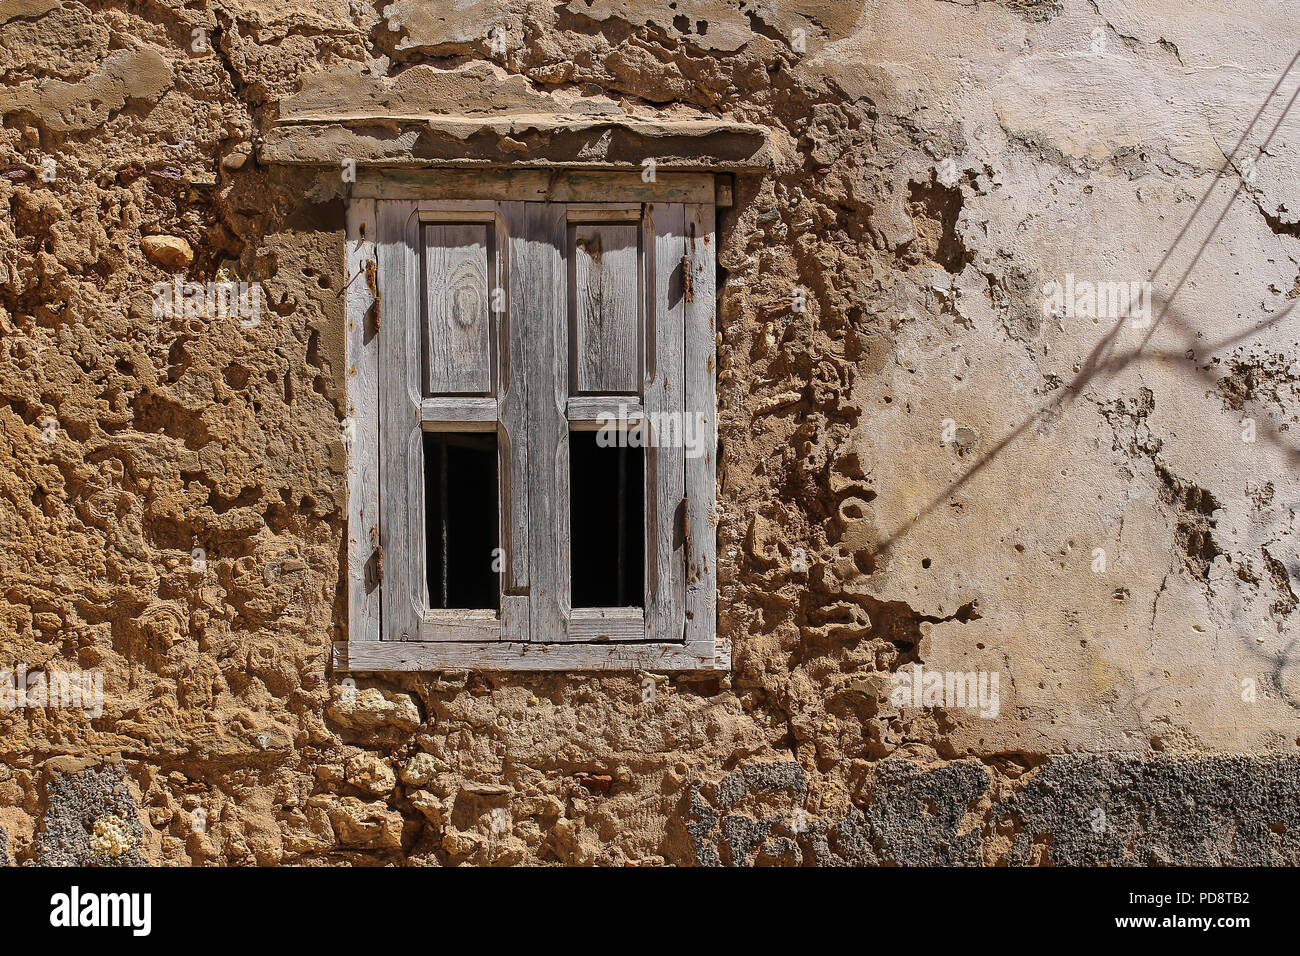 Pela façade d'une vieille maison. Fenêtre avec un volet en bois naturel, en partie fragile. El Jadida, Maroc. Banque D'Images